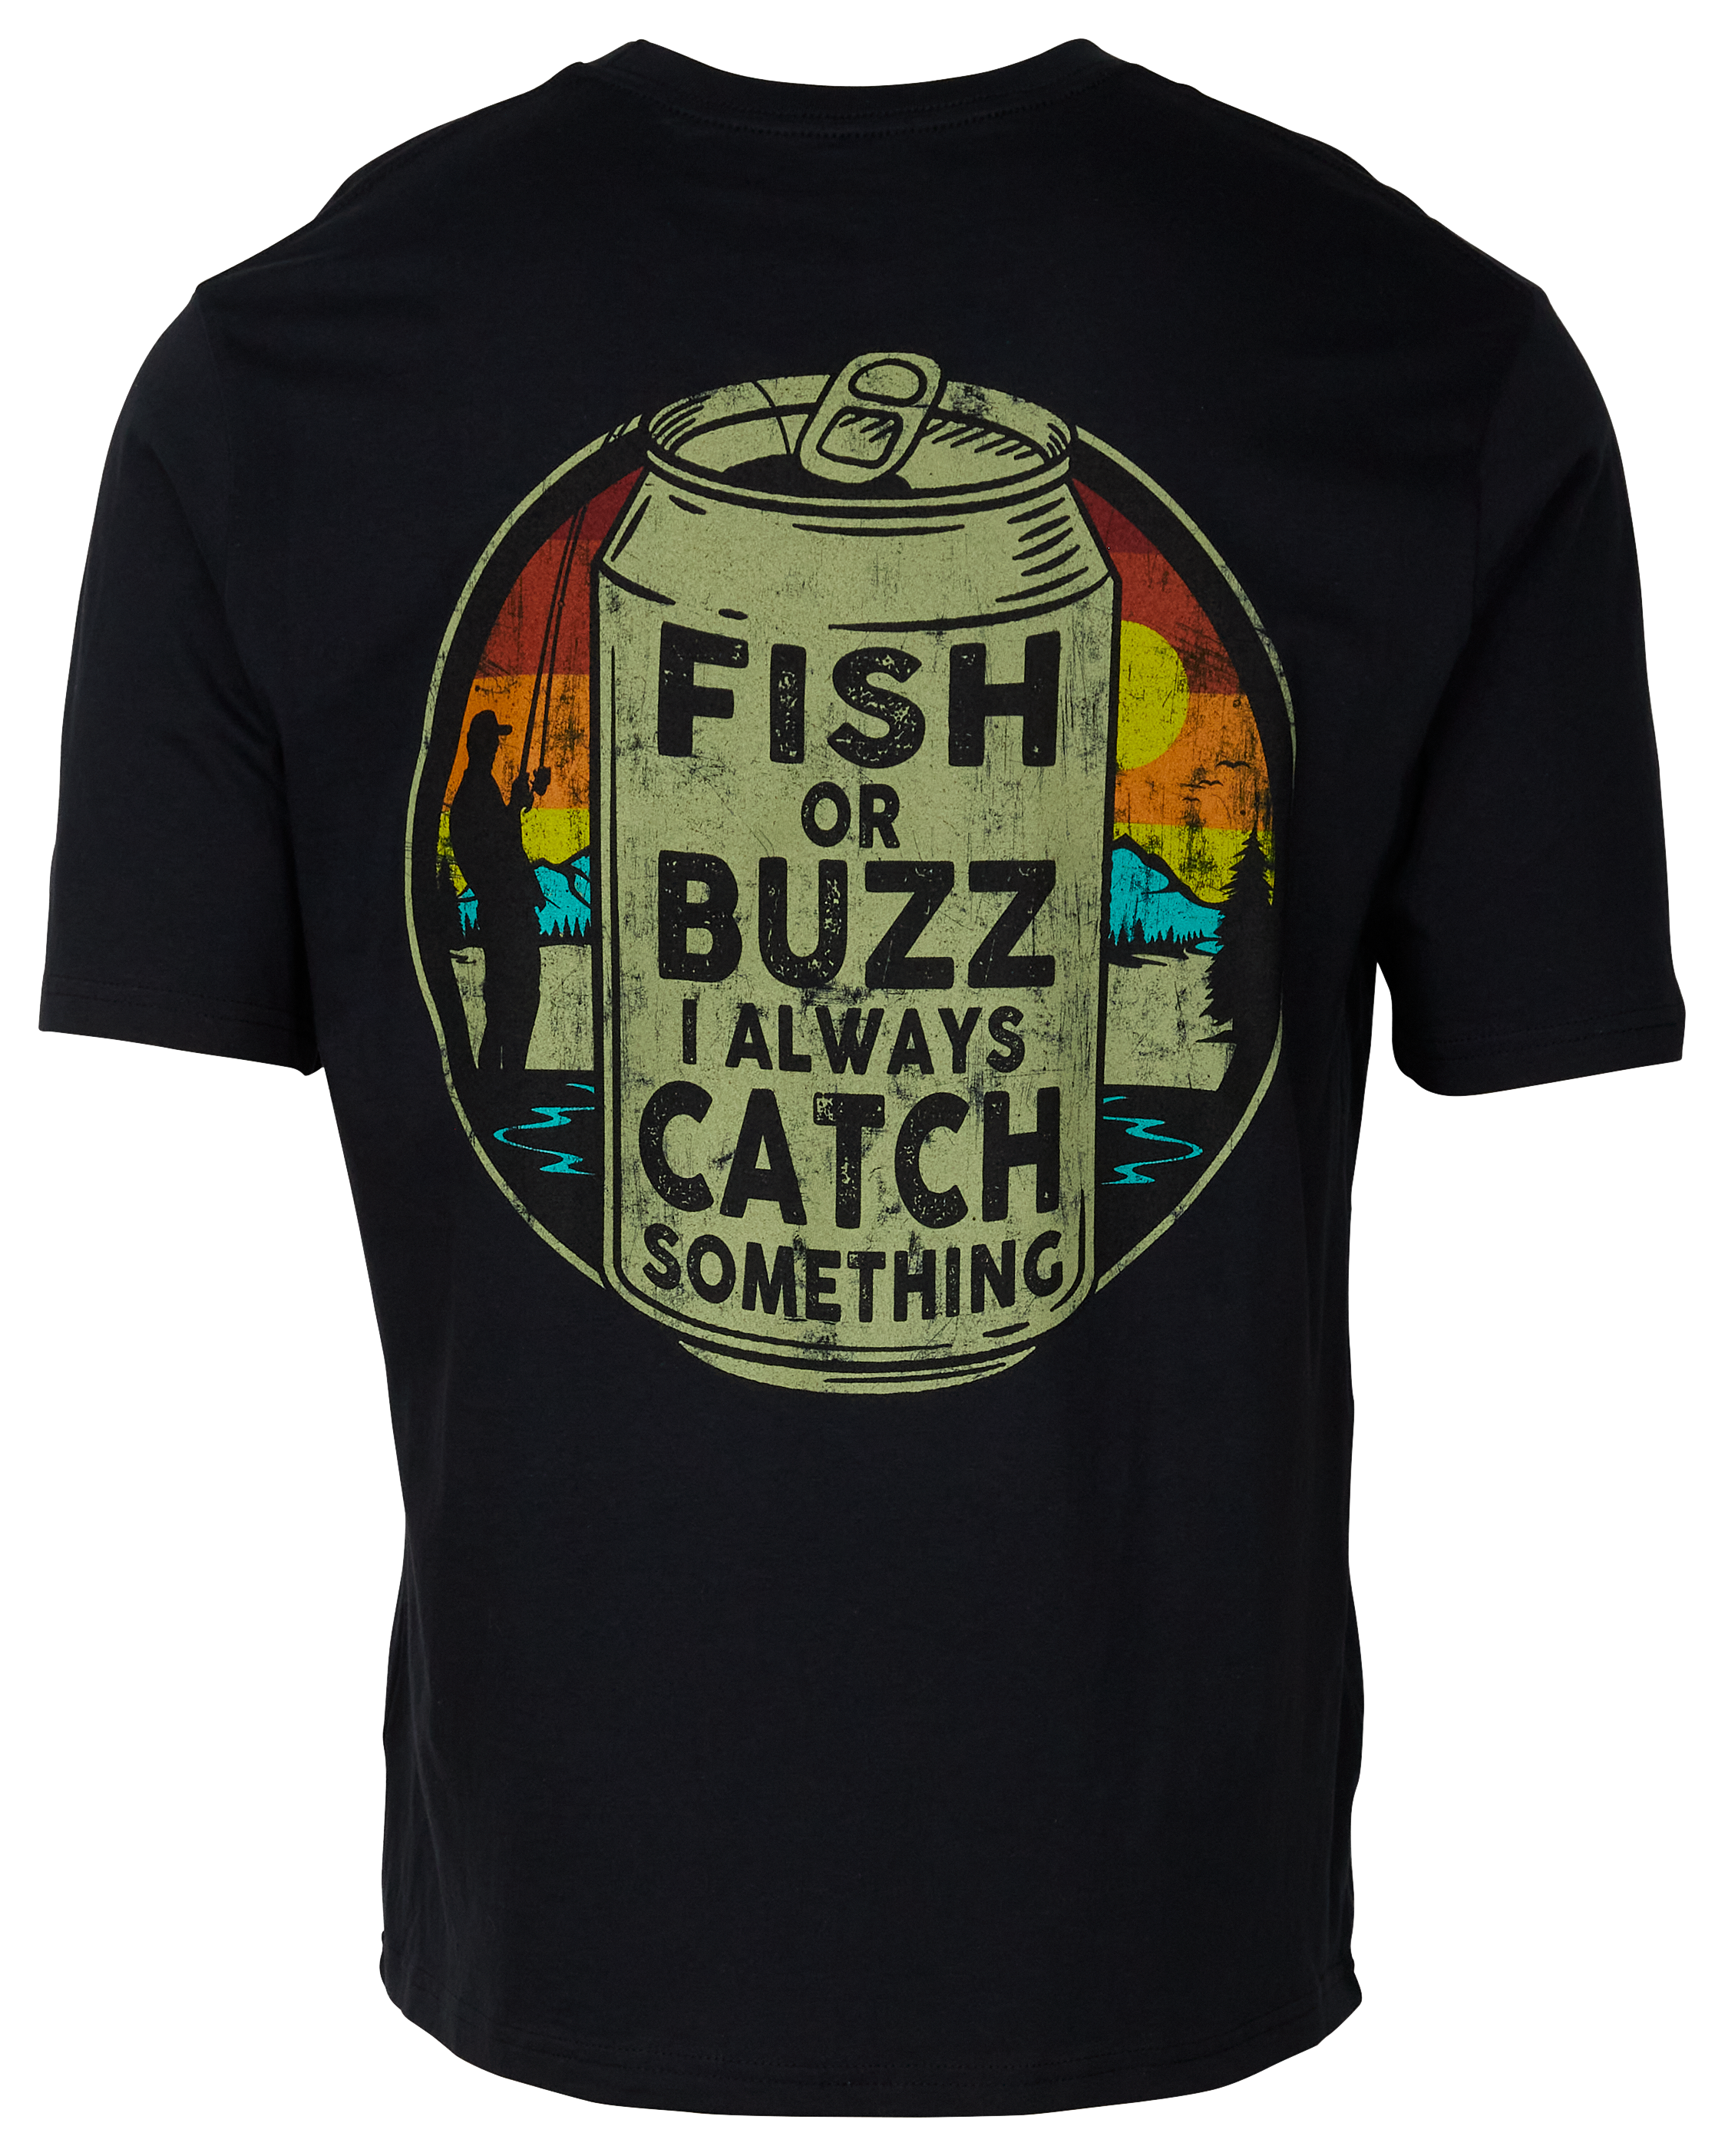 THE FISH CALL ME! FISHING CALLING! FISHING SHIRT!' Men's T-Shirt